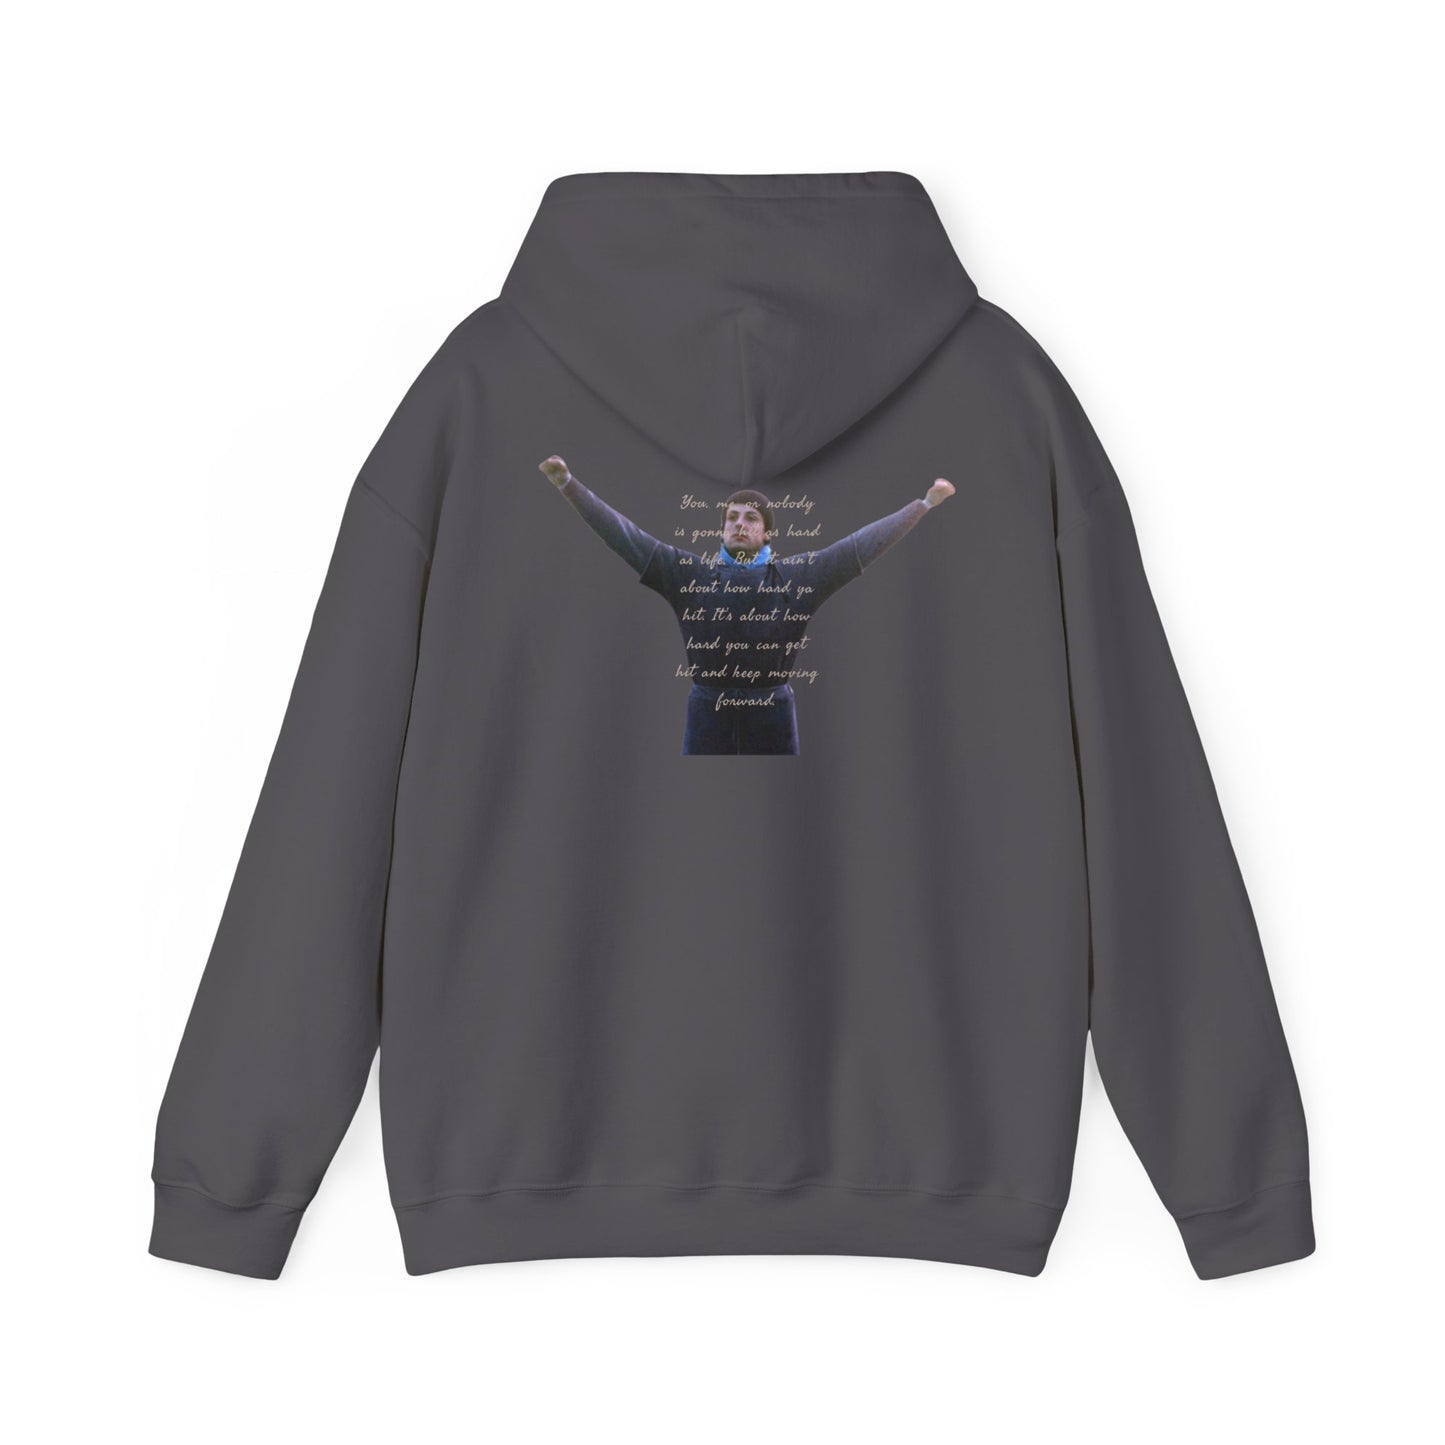 Rocky Unisex Heavy Blend™ Hooded Sweatshirt